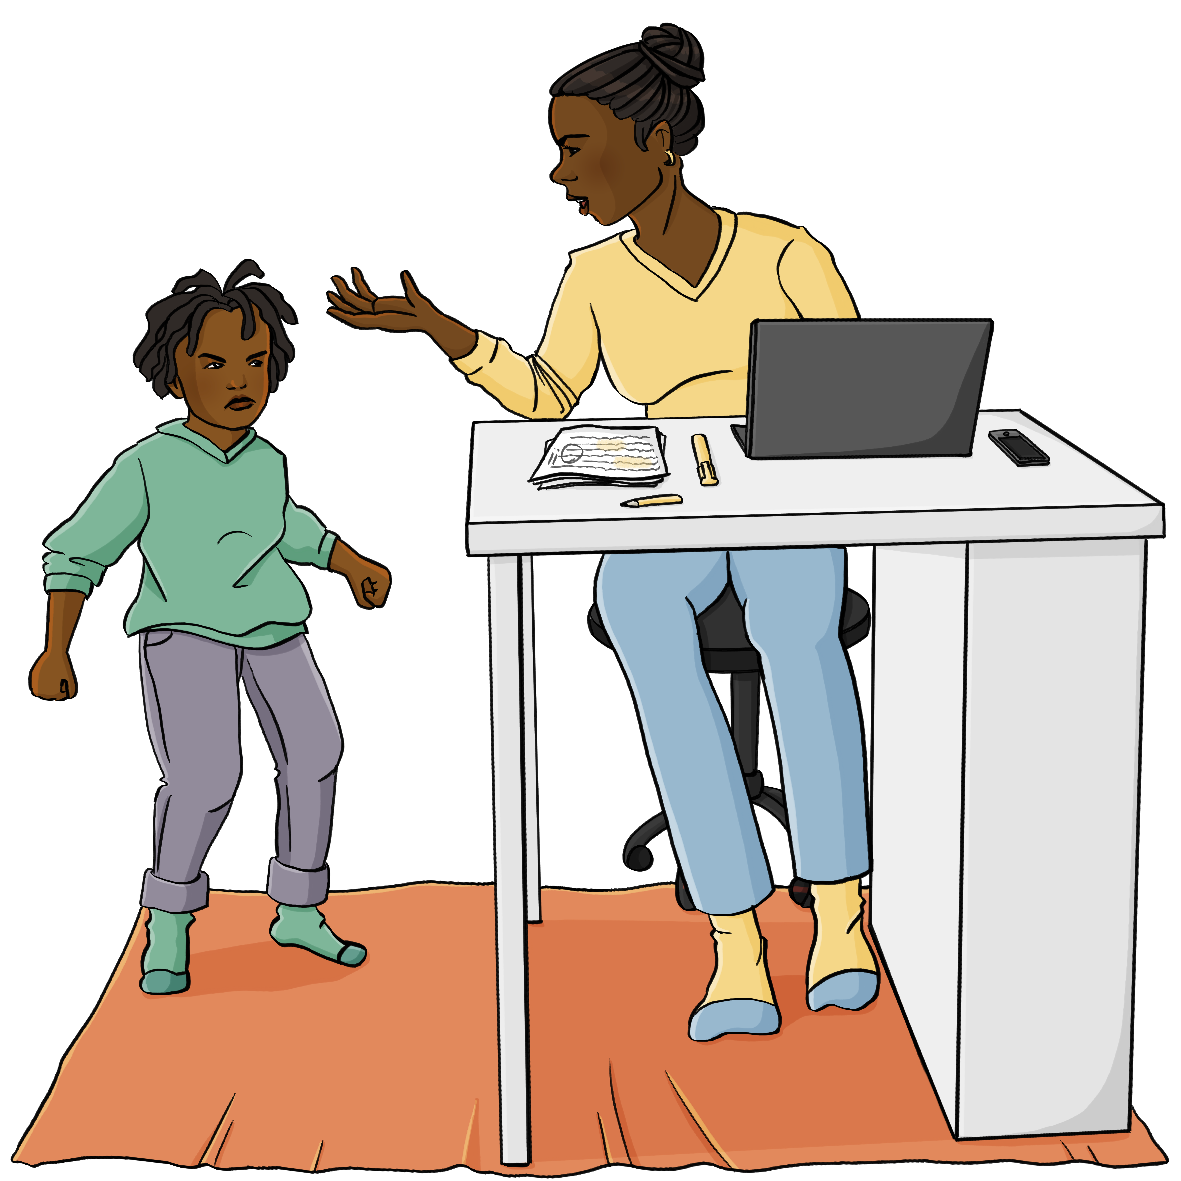 Eine Frau sitzt am Schreibtisch, darauf steht ein Computer. Neben dem Tisch stampft ein Kind auf den Boden und schaut wütend. Die Frau schaut das Kind genervt an.